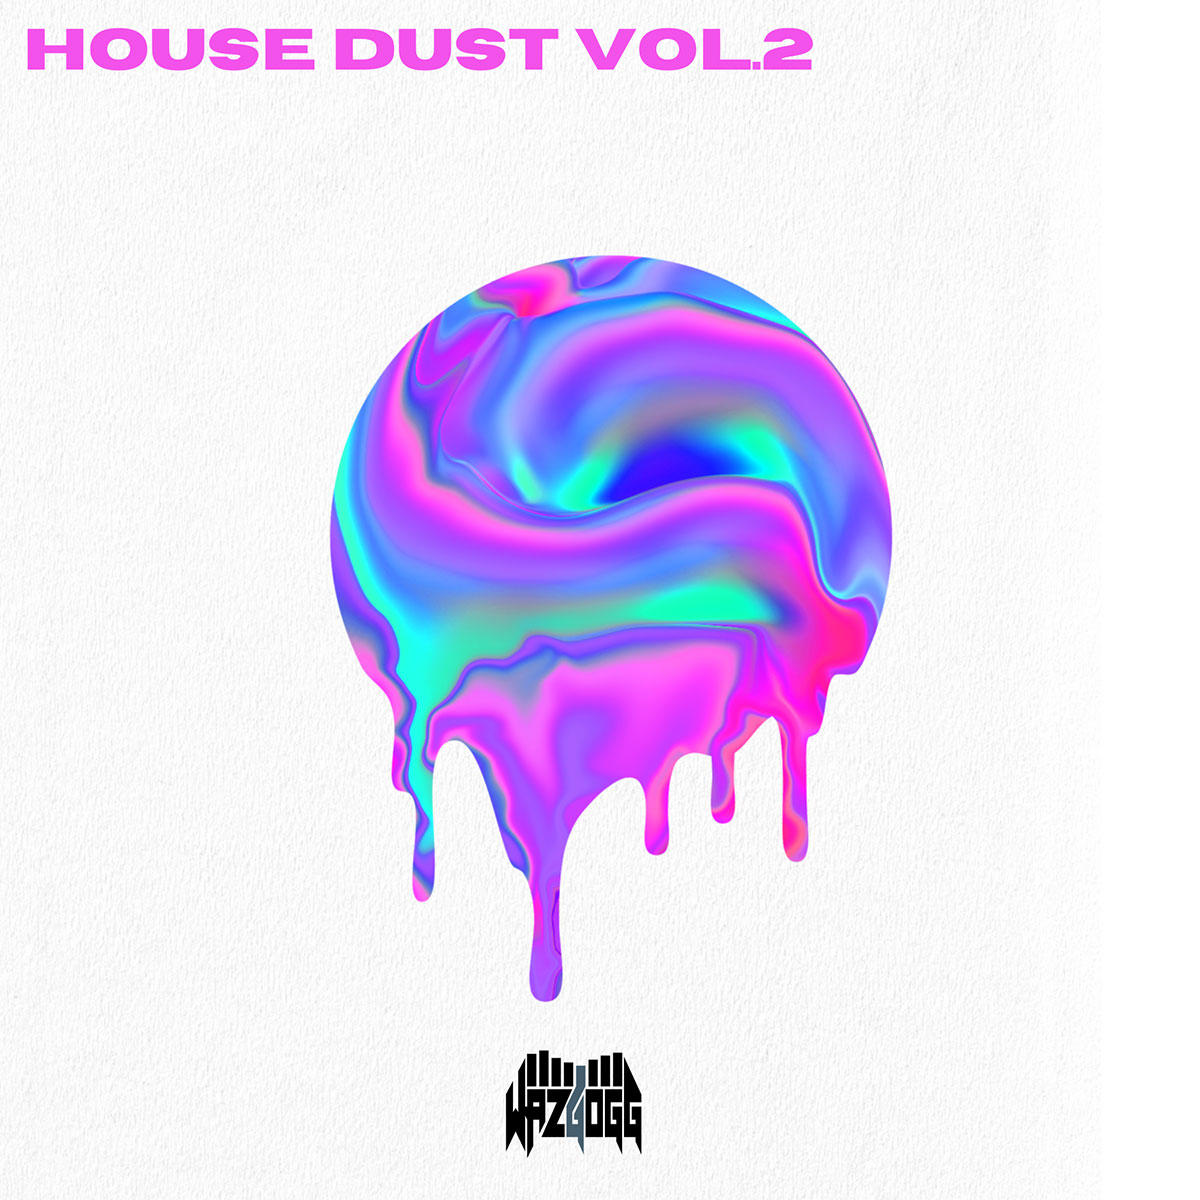 House-dust-vol2_wazgogg_jk_20240228.jpg